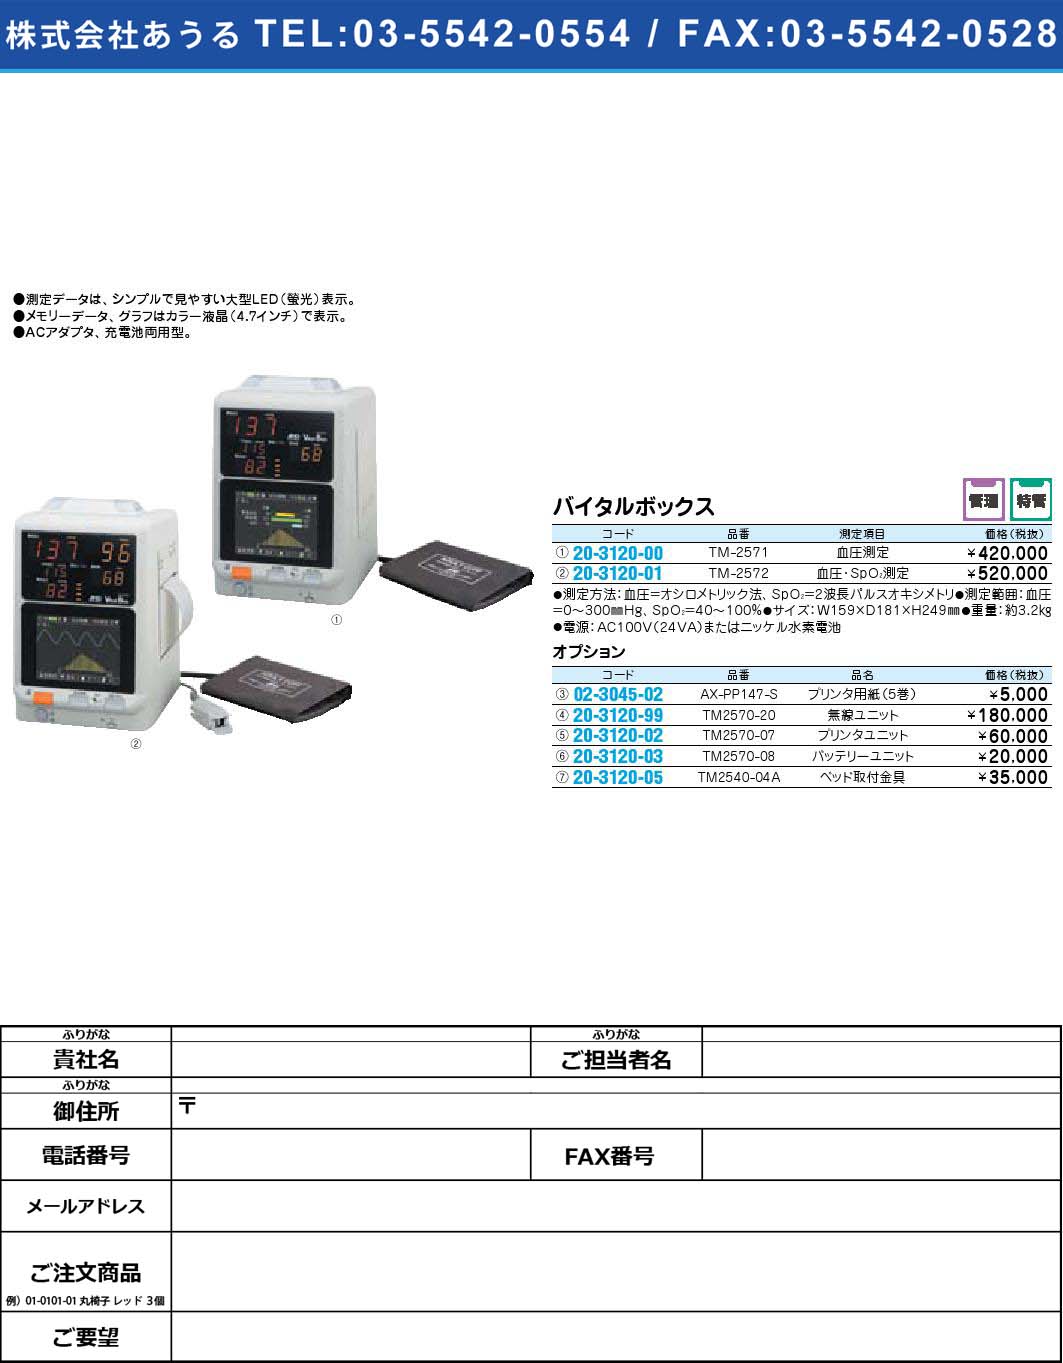 バイタルボックス オプション TM2570-08【1単位】(20-3120-03)